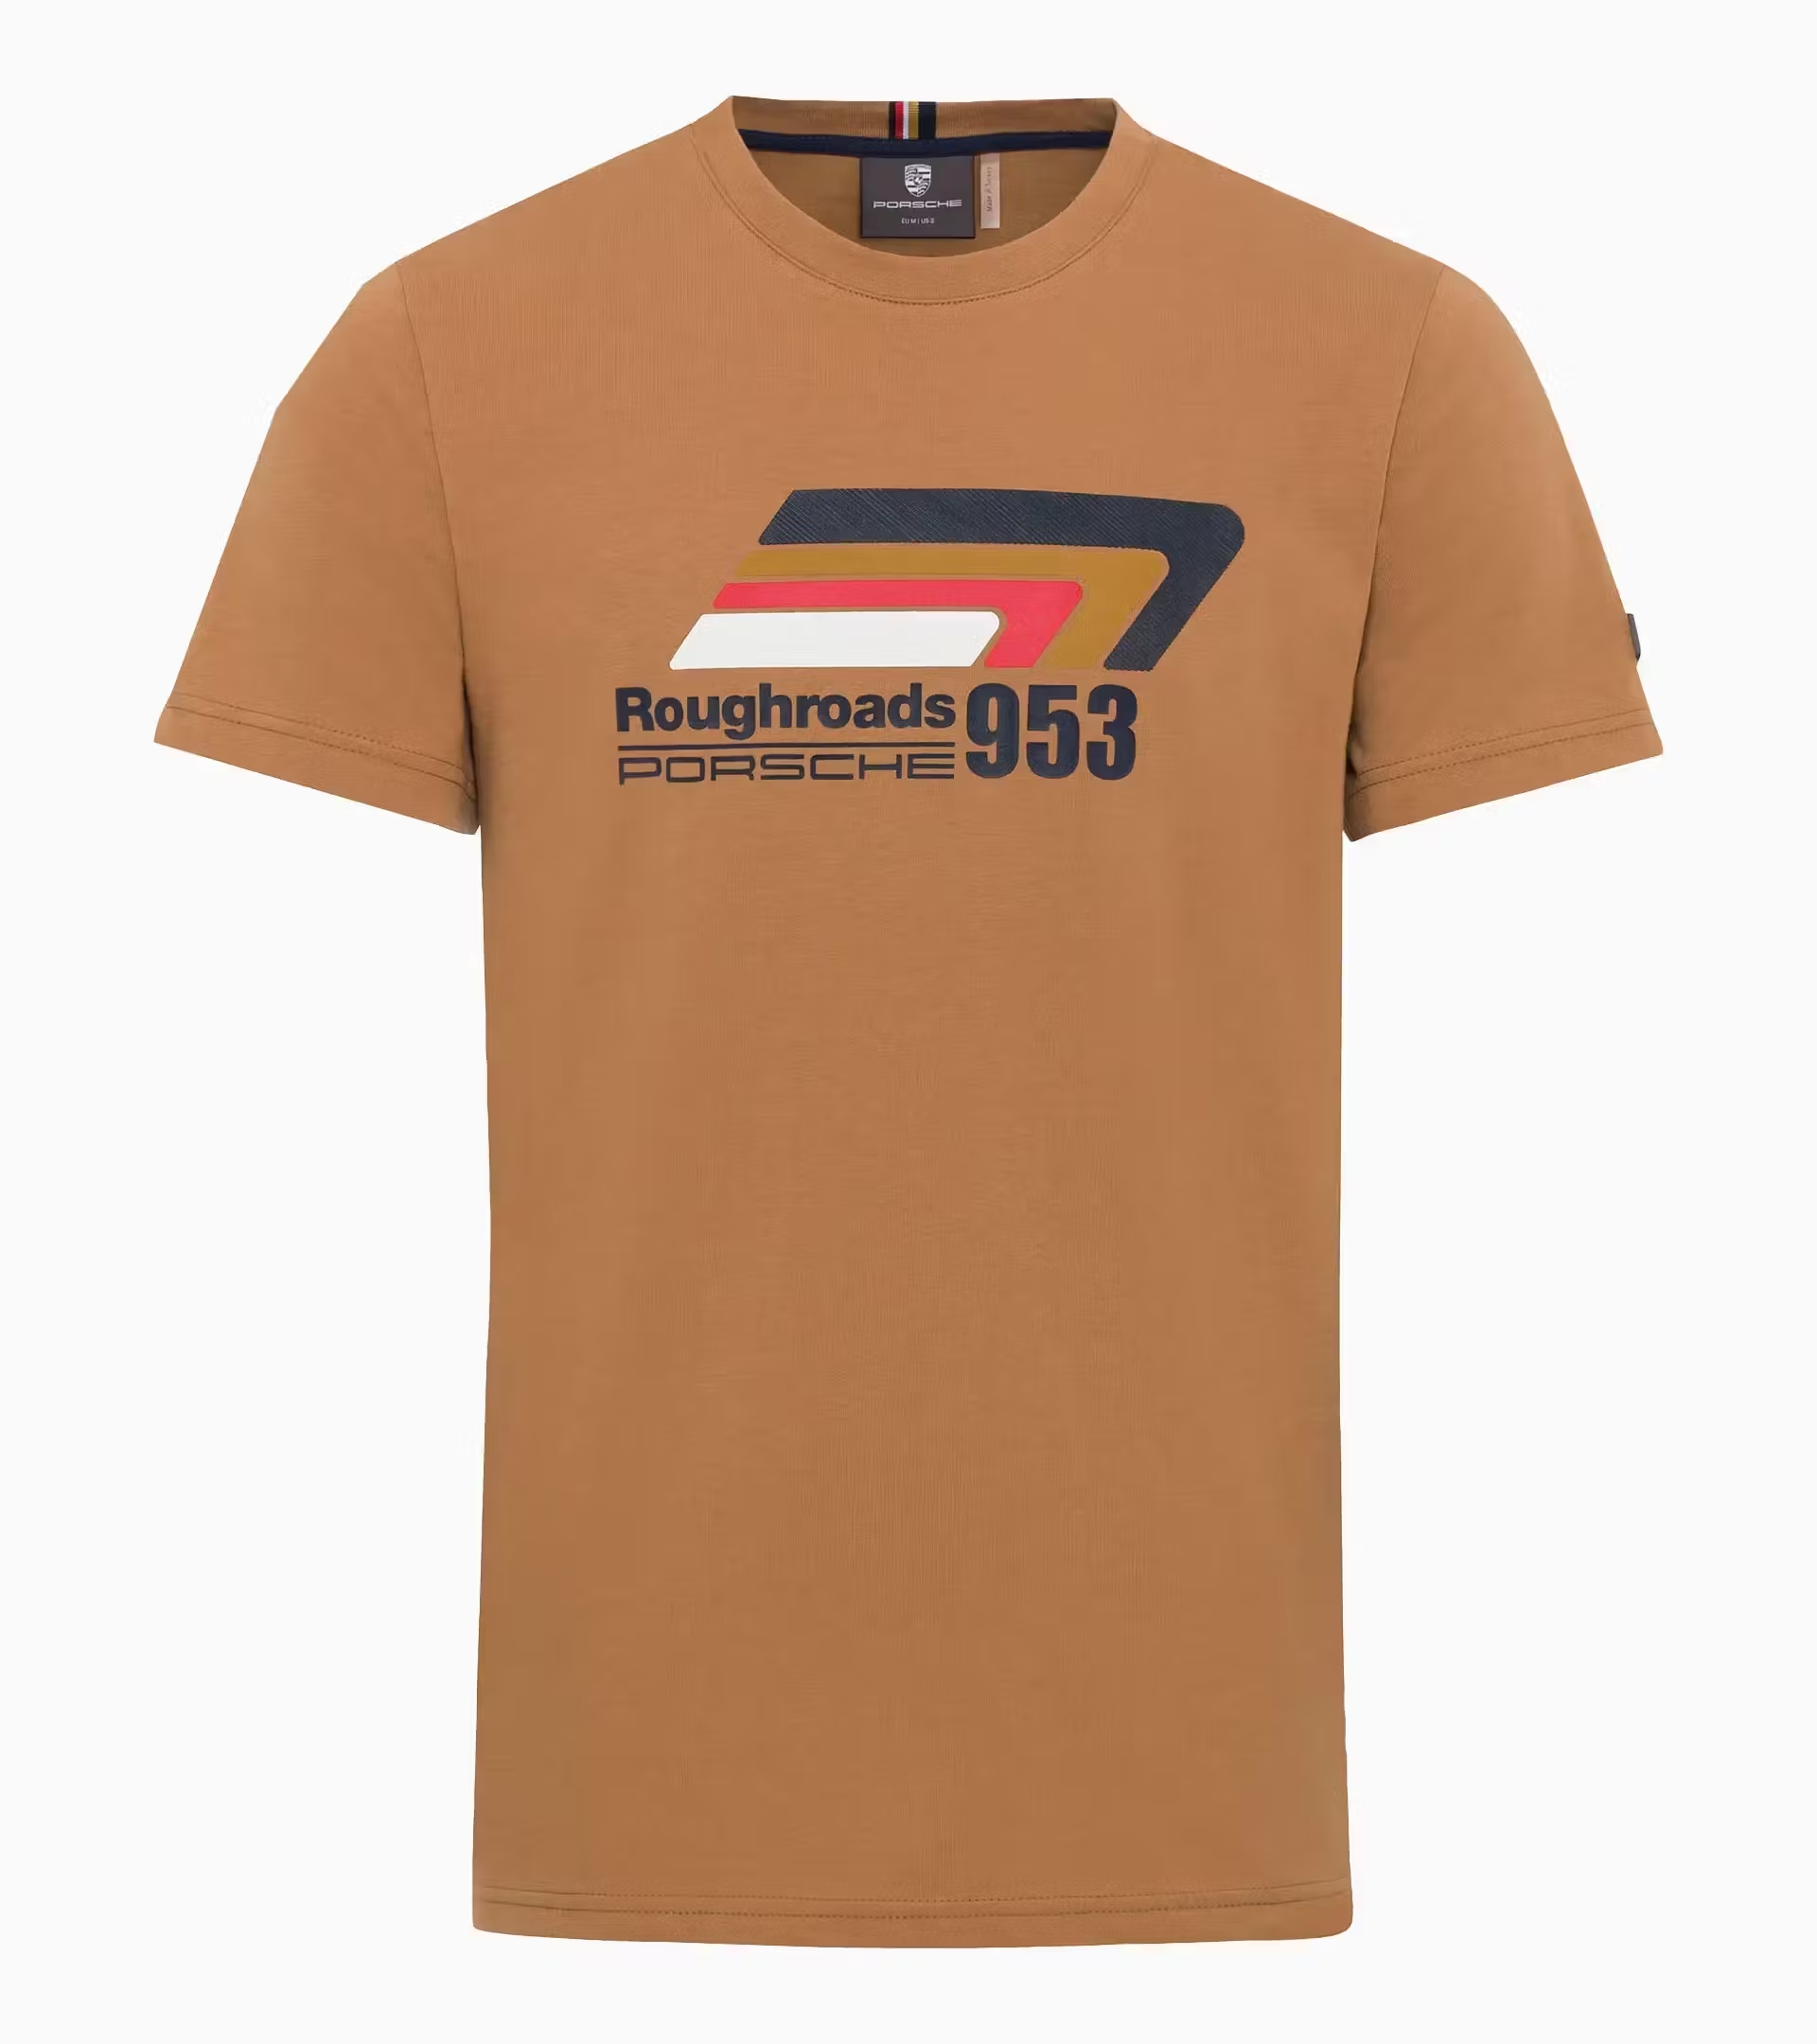 Porsche T-shirt unisexe – Roughroads